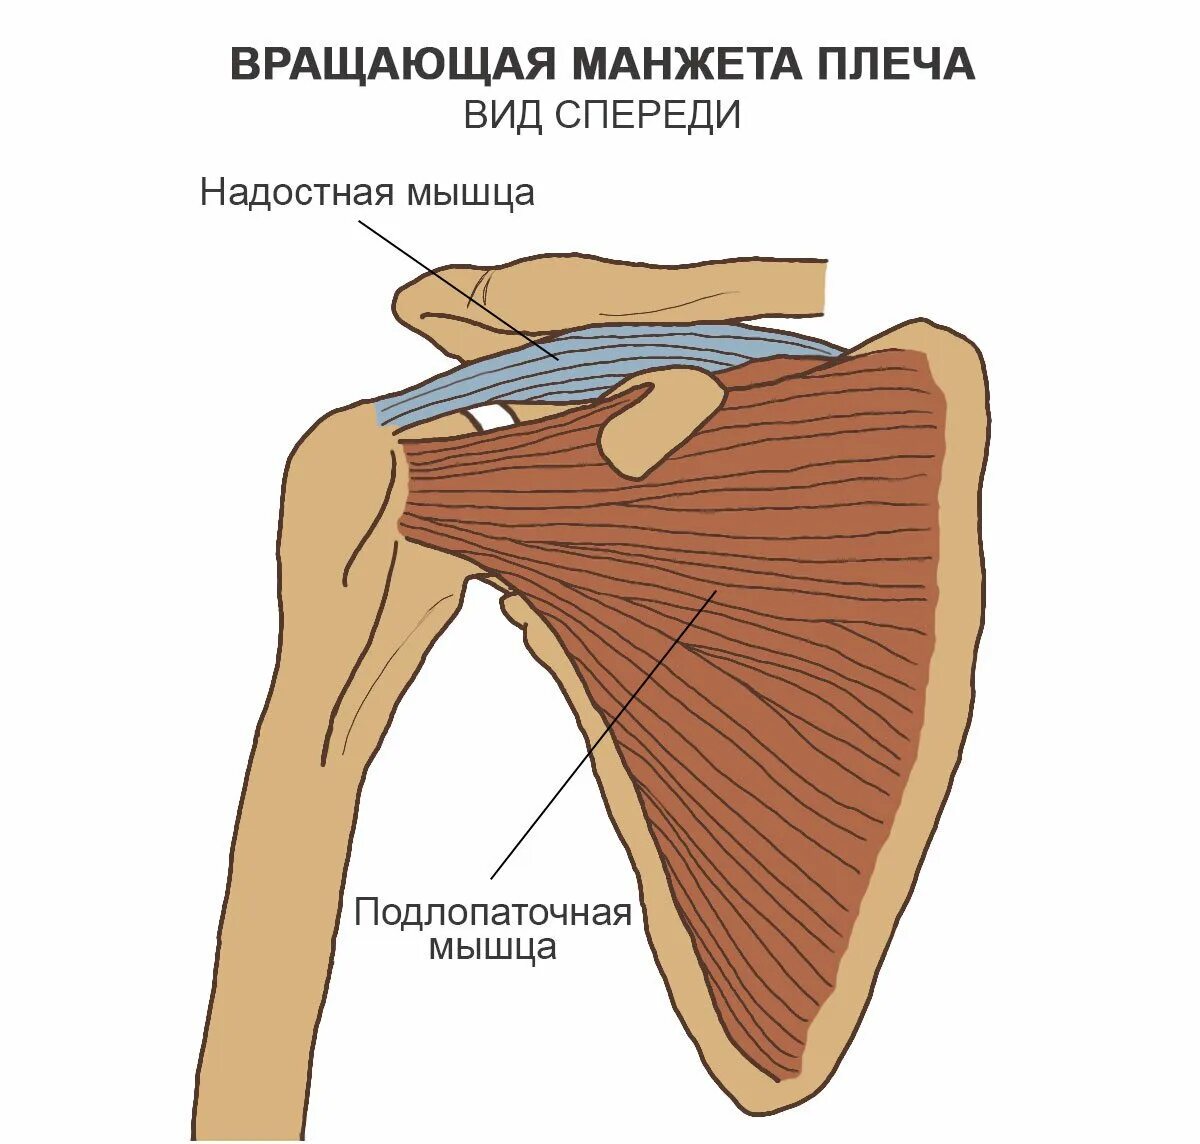 Повреждение сухожилия подлопаточной мышцы. Мышцы ротаторной манжеты плечевого сустава. Ротаторная манжета плечевого сустава анатомия. Ротаторнвя мвнжета мышцы. Надостная мышца плечевого сустава анатомия.